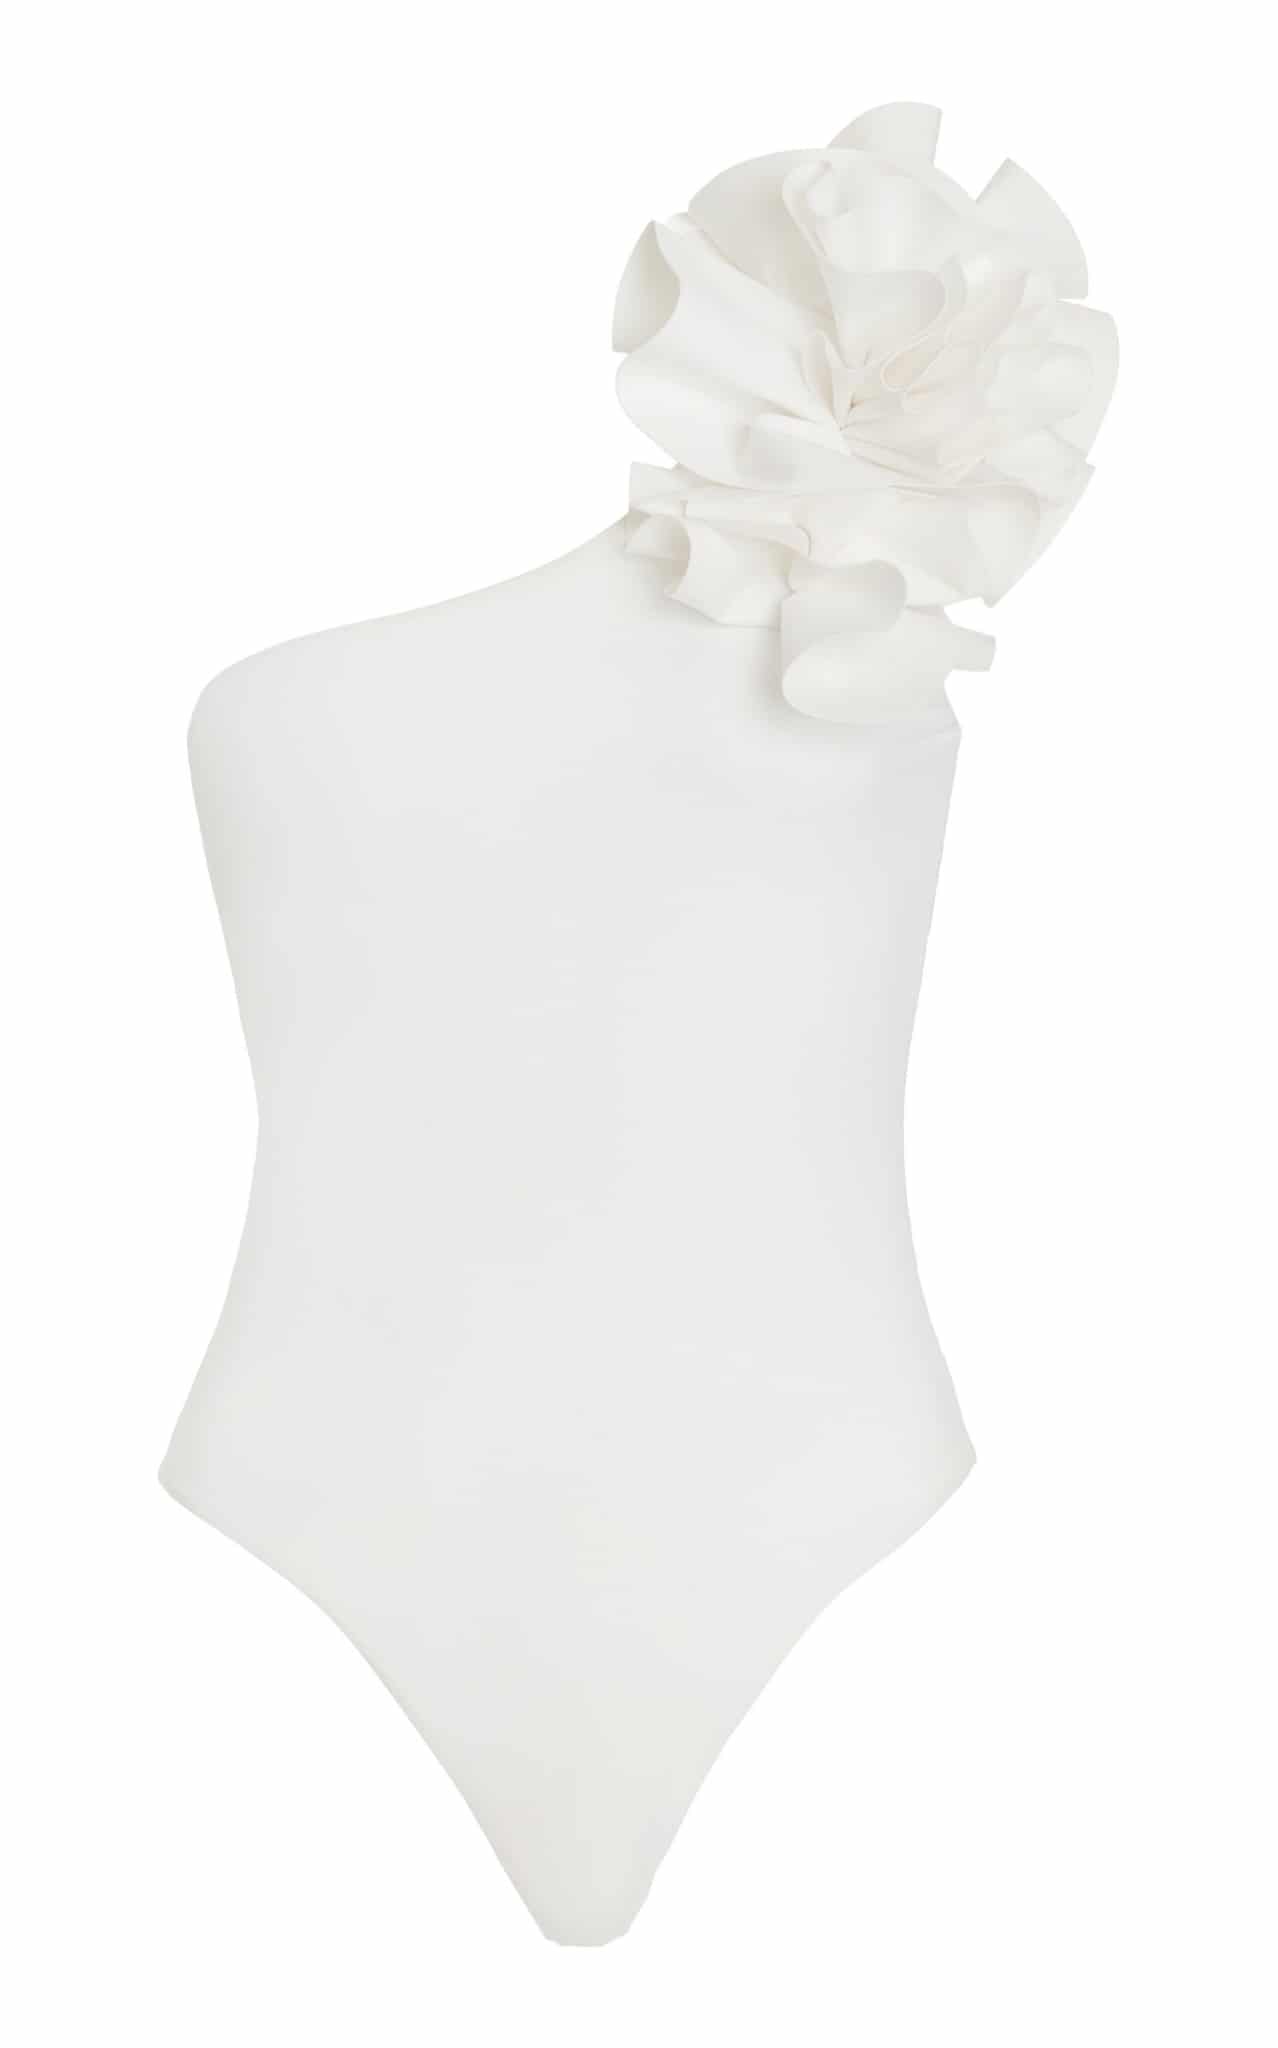 one piece bathing suit - white bathing suit - Moda Operandi _ Maygel Coronel - inspiring